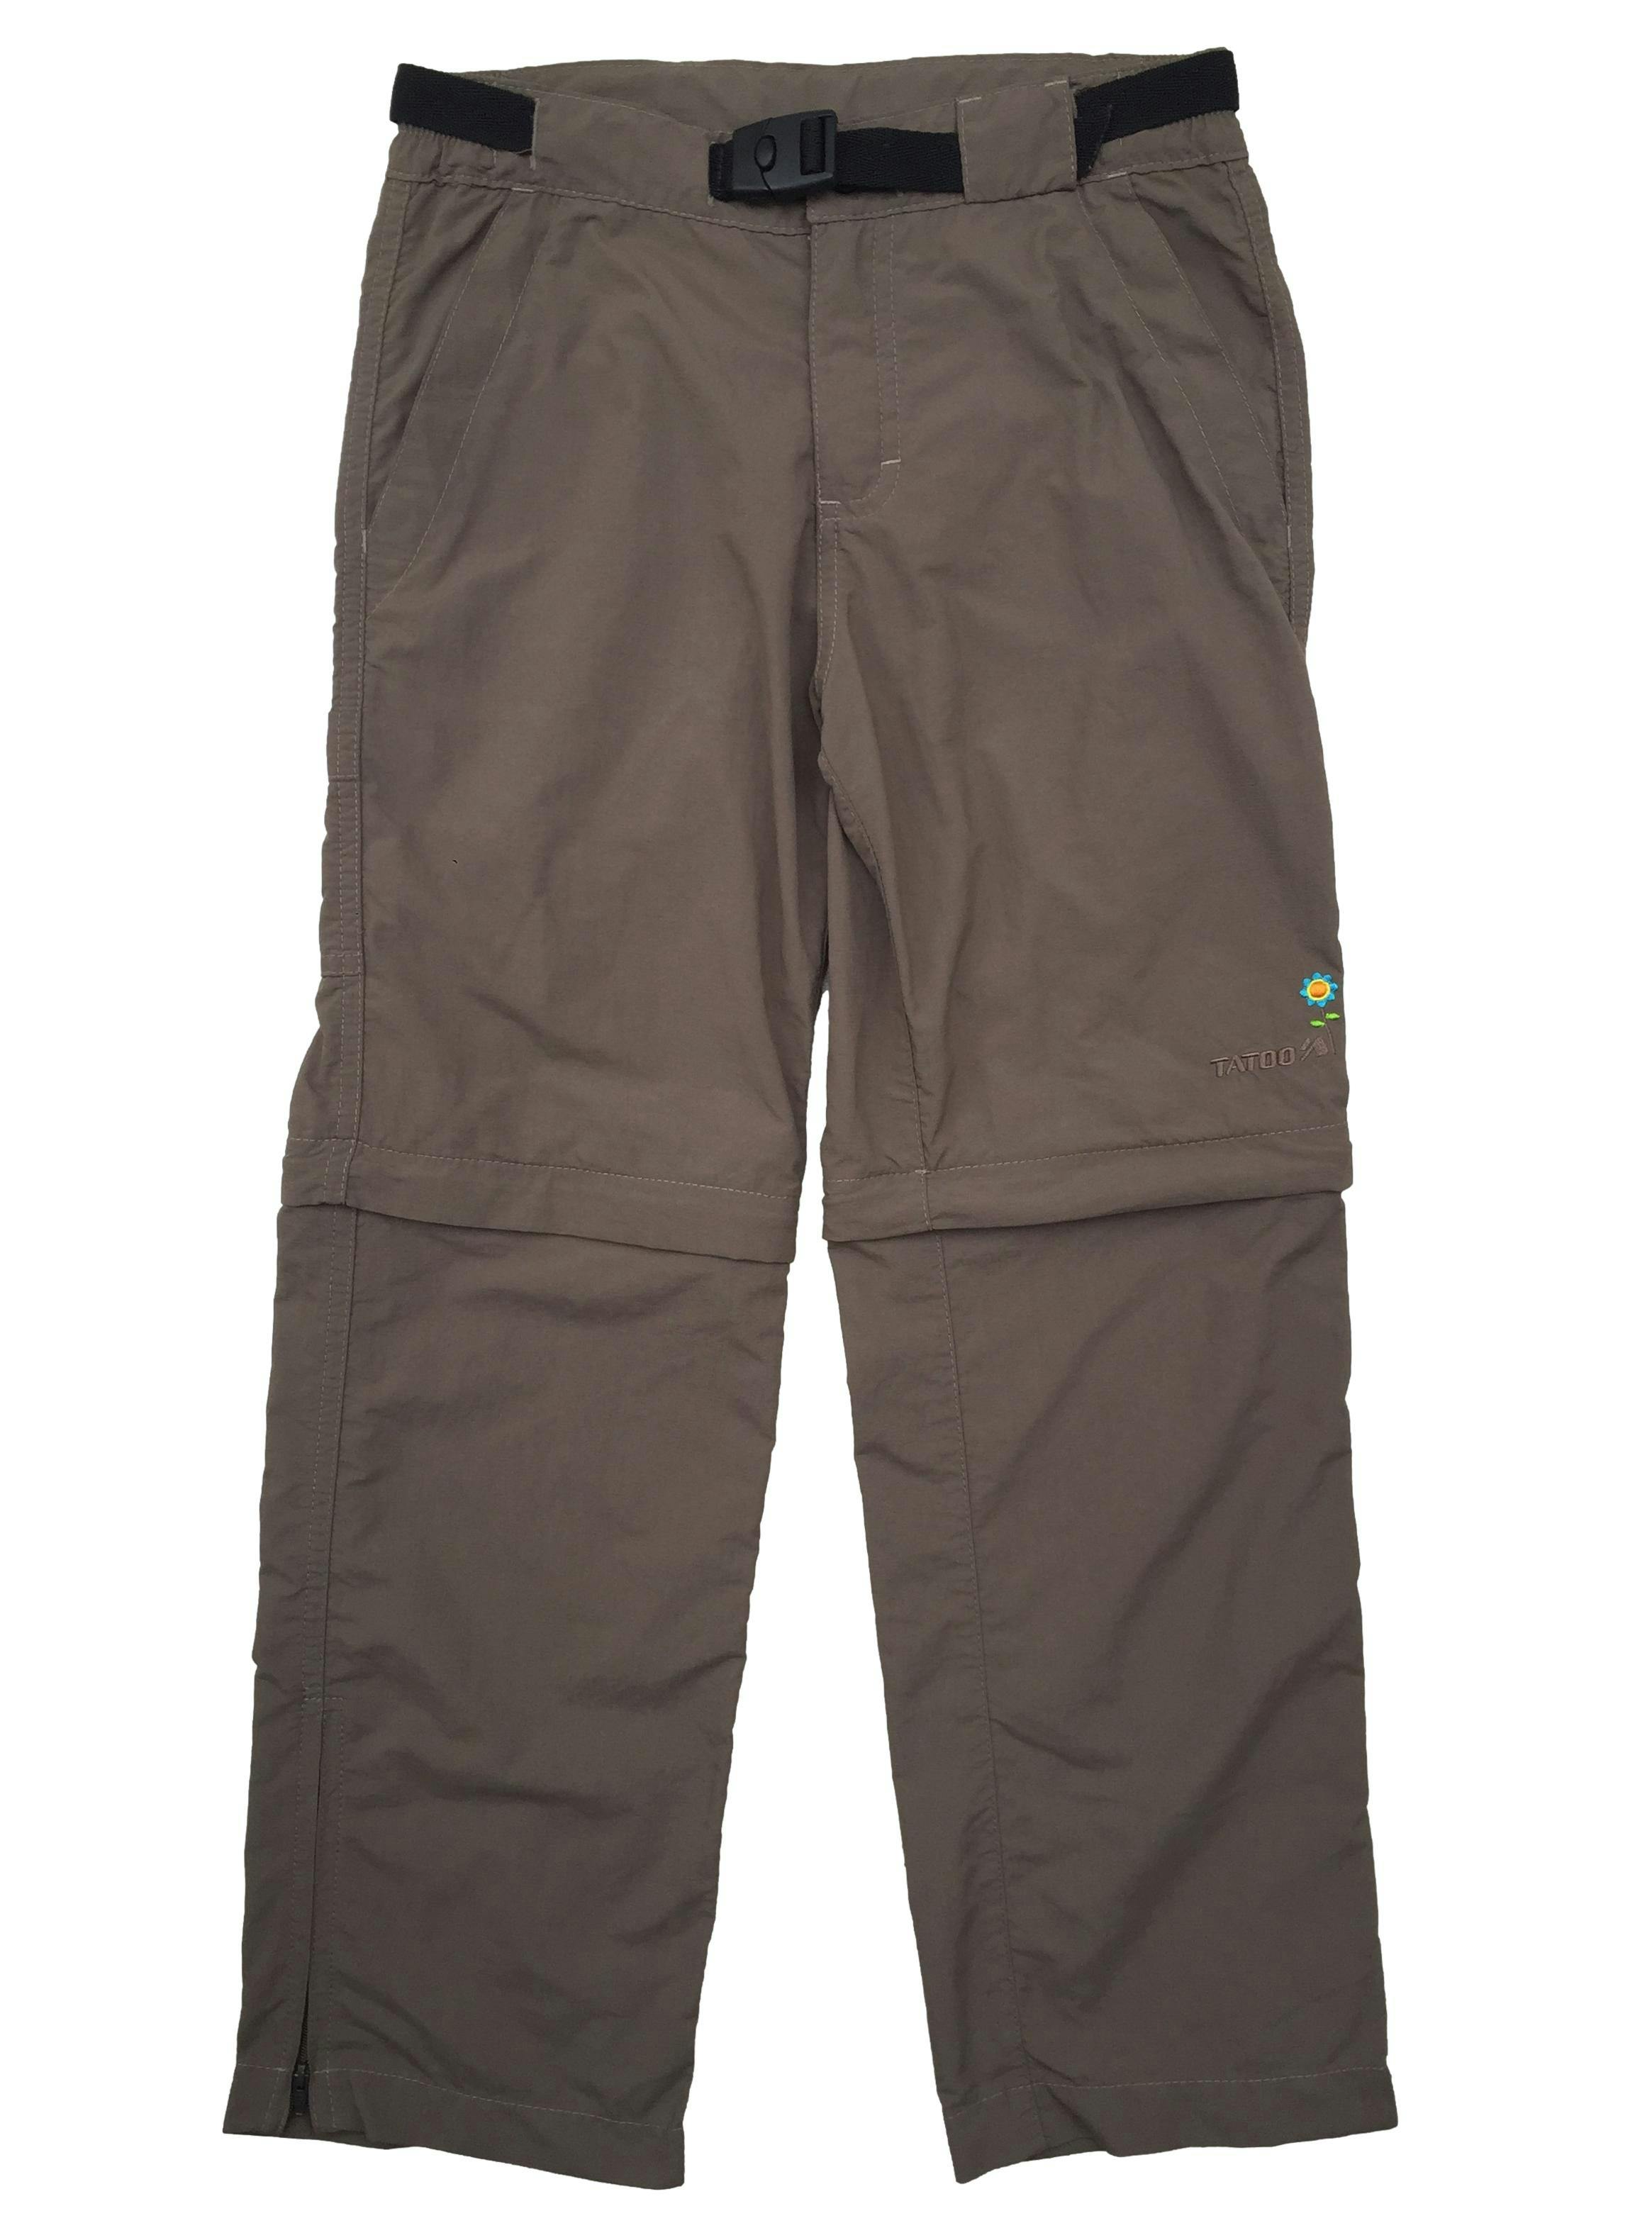 Pantalón cargo con correa ajustable, bolsillos y cierres desmontables para convertir en short  talla 10.